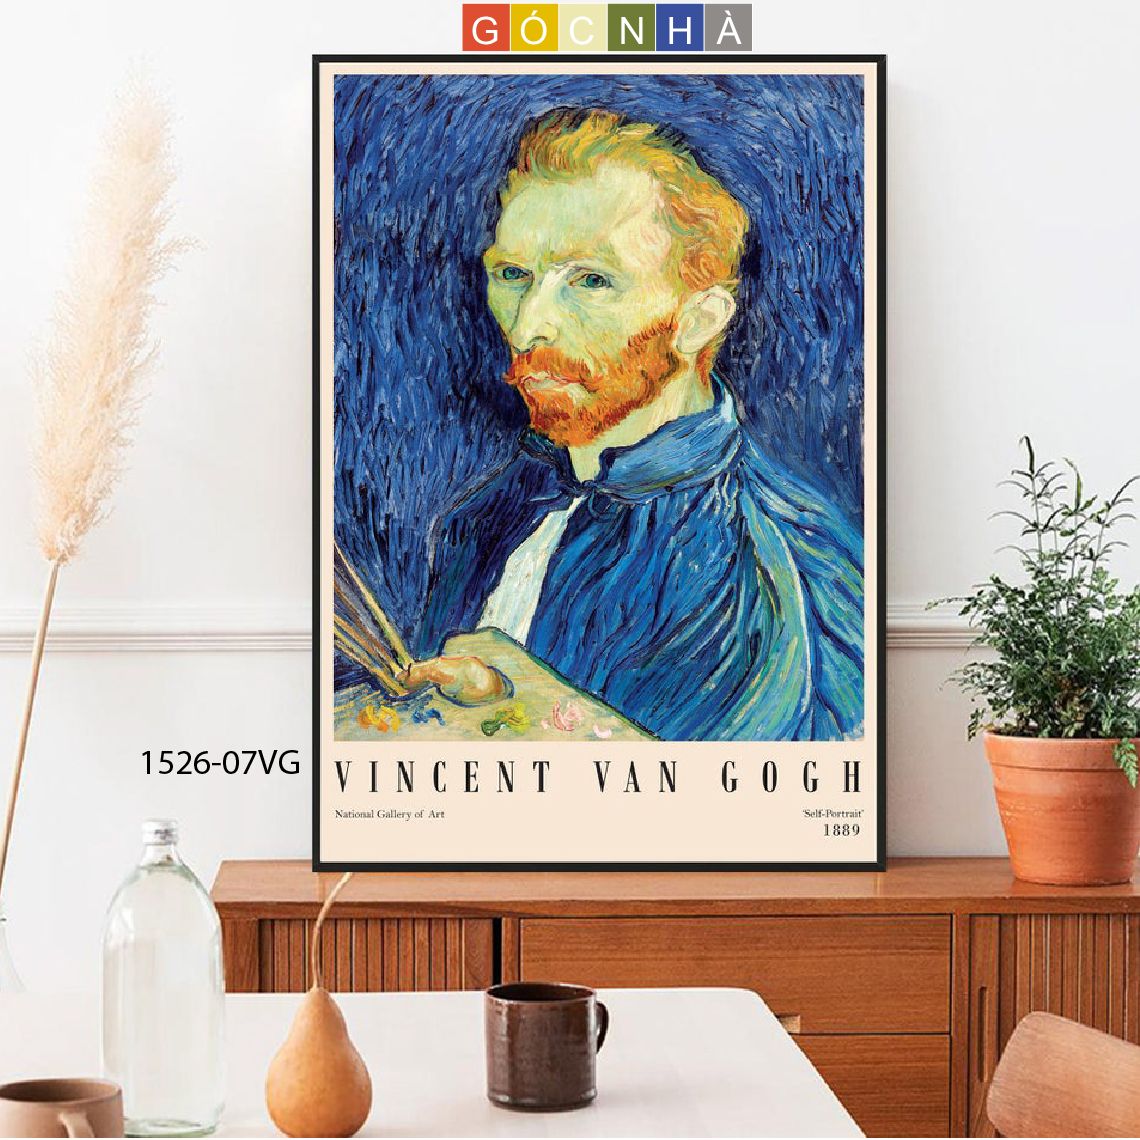 Những bức tranh của Van Gogh luôn mang đậm chất cá nhân, sáng tạo và sức sống mạnh mẽ. Để tận hưởng vẻ đẹp đó, hãy click vào hình ảnh để xem những bức tranh nổi tiếng của họa sĩ danh tiếng này.